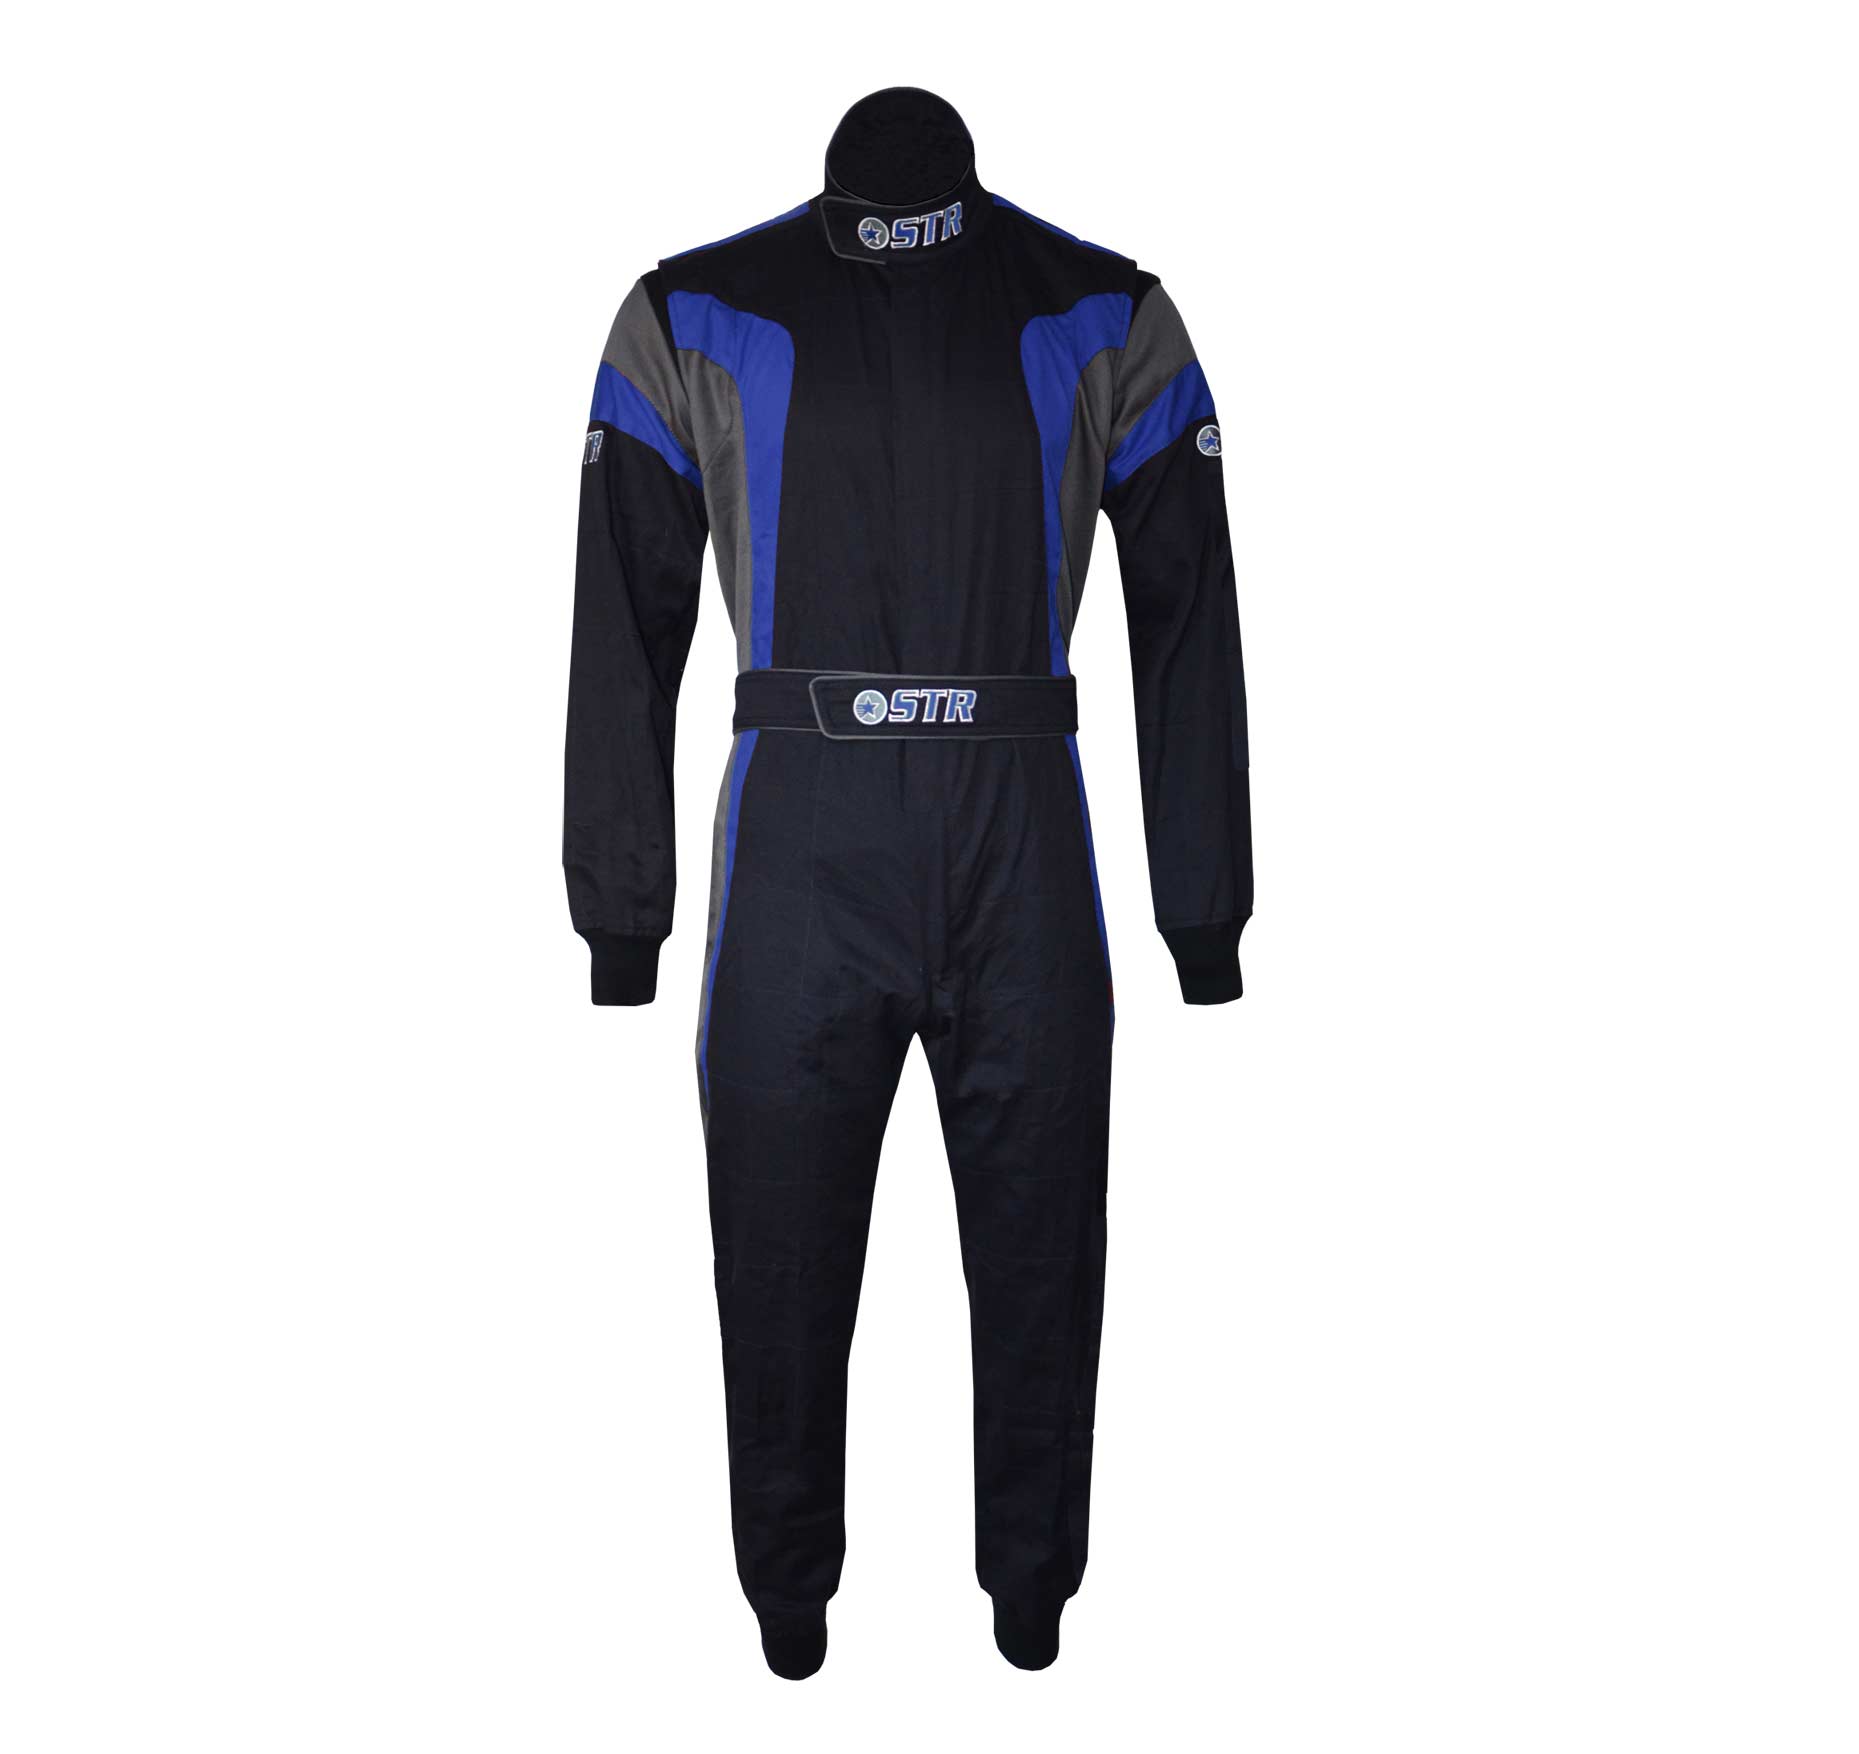 STR 'Podium' Race Suit - Black/Blue/Grey